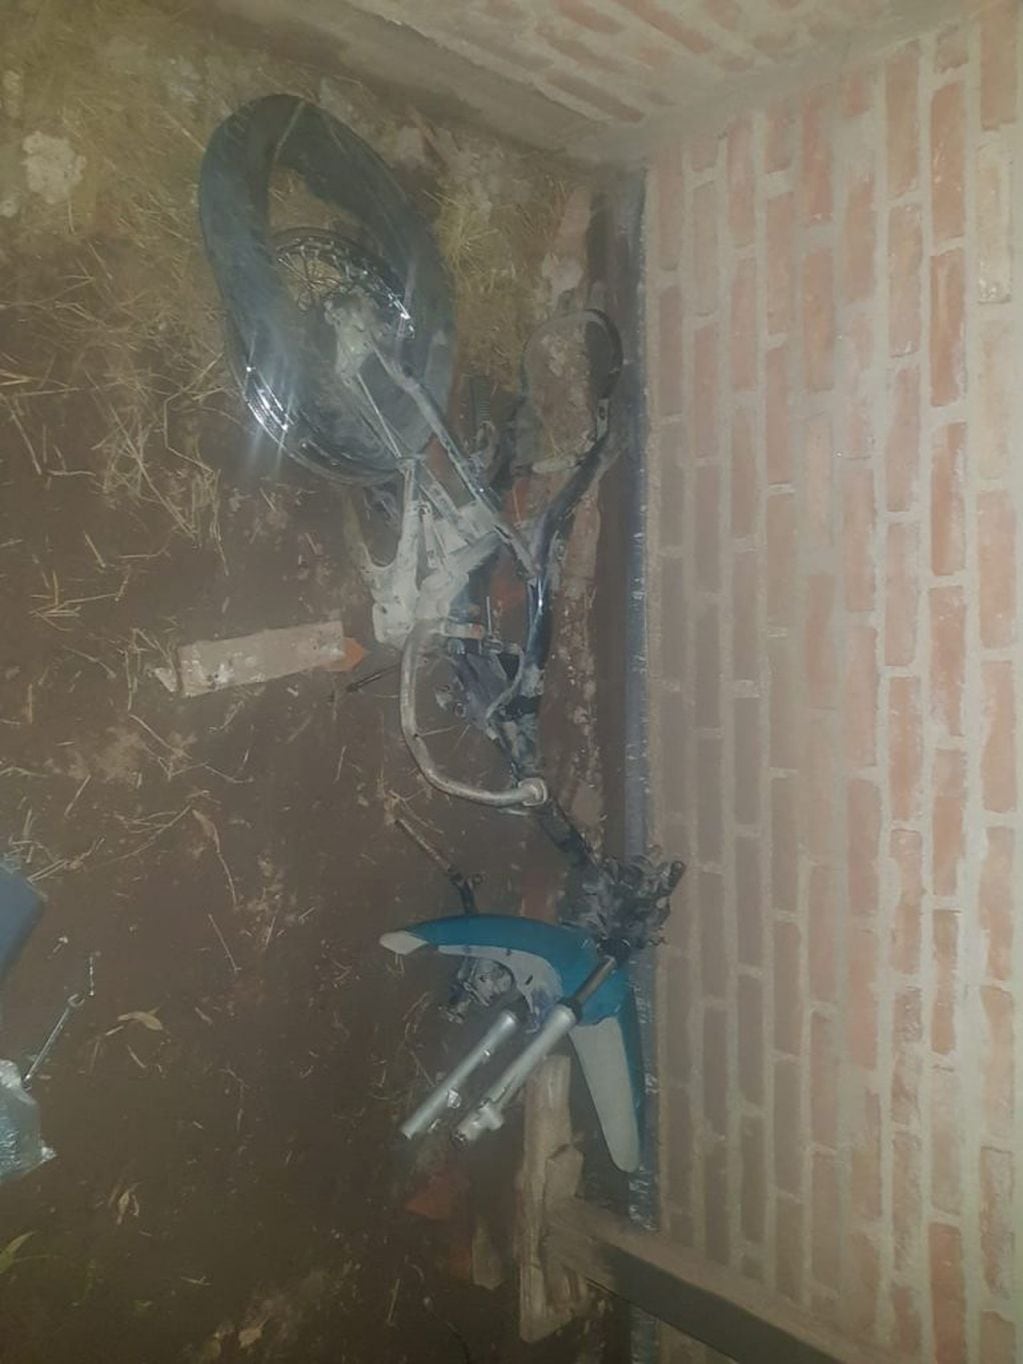 Hallazgo de una motocicleta desarmada en una obra en construcción ubicada en Villa Los Olivares.